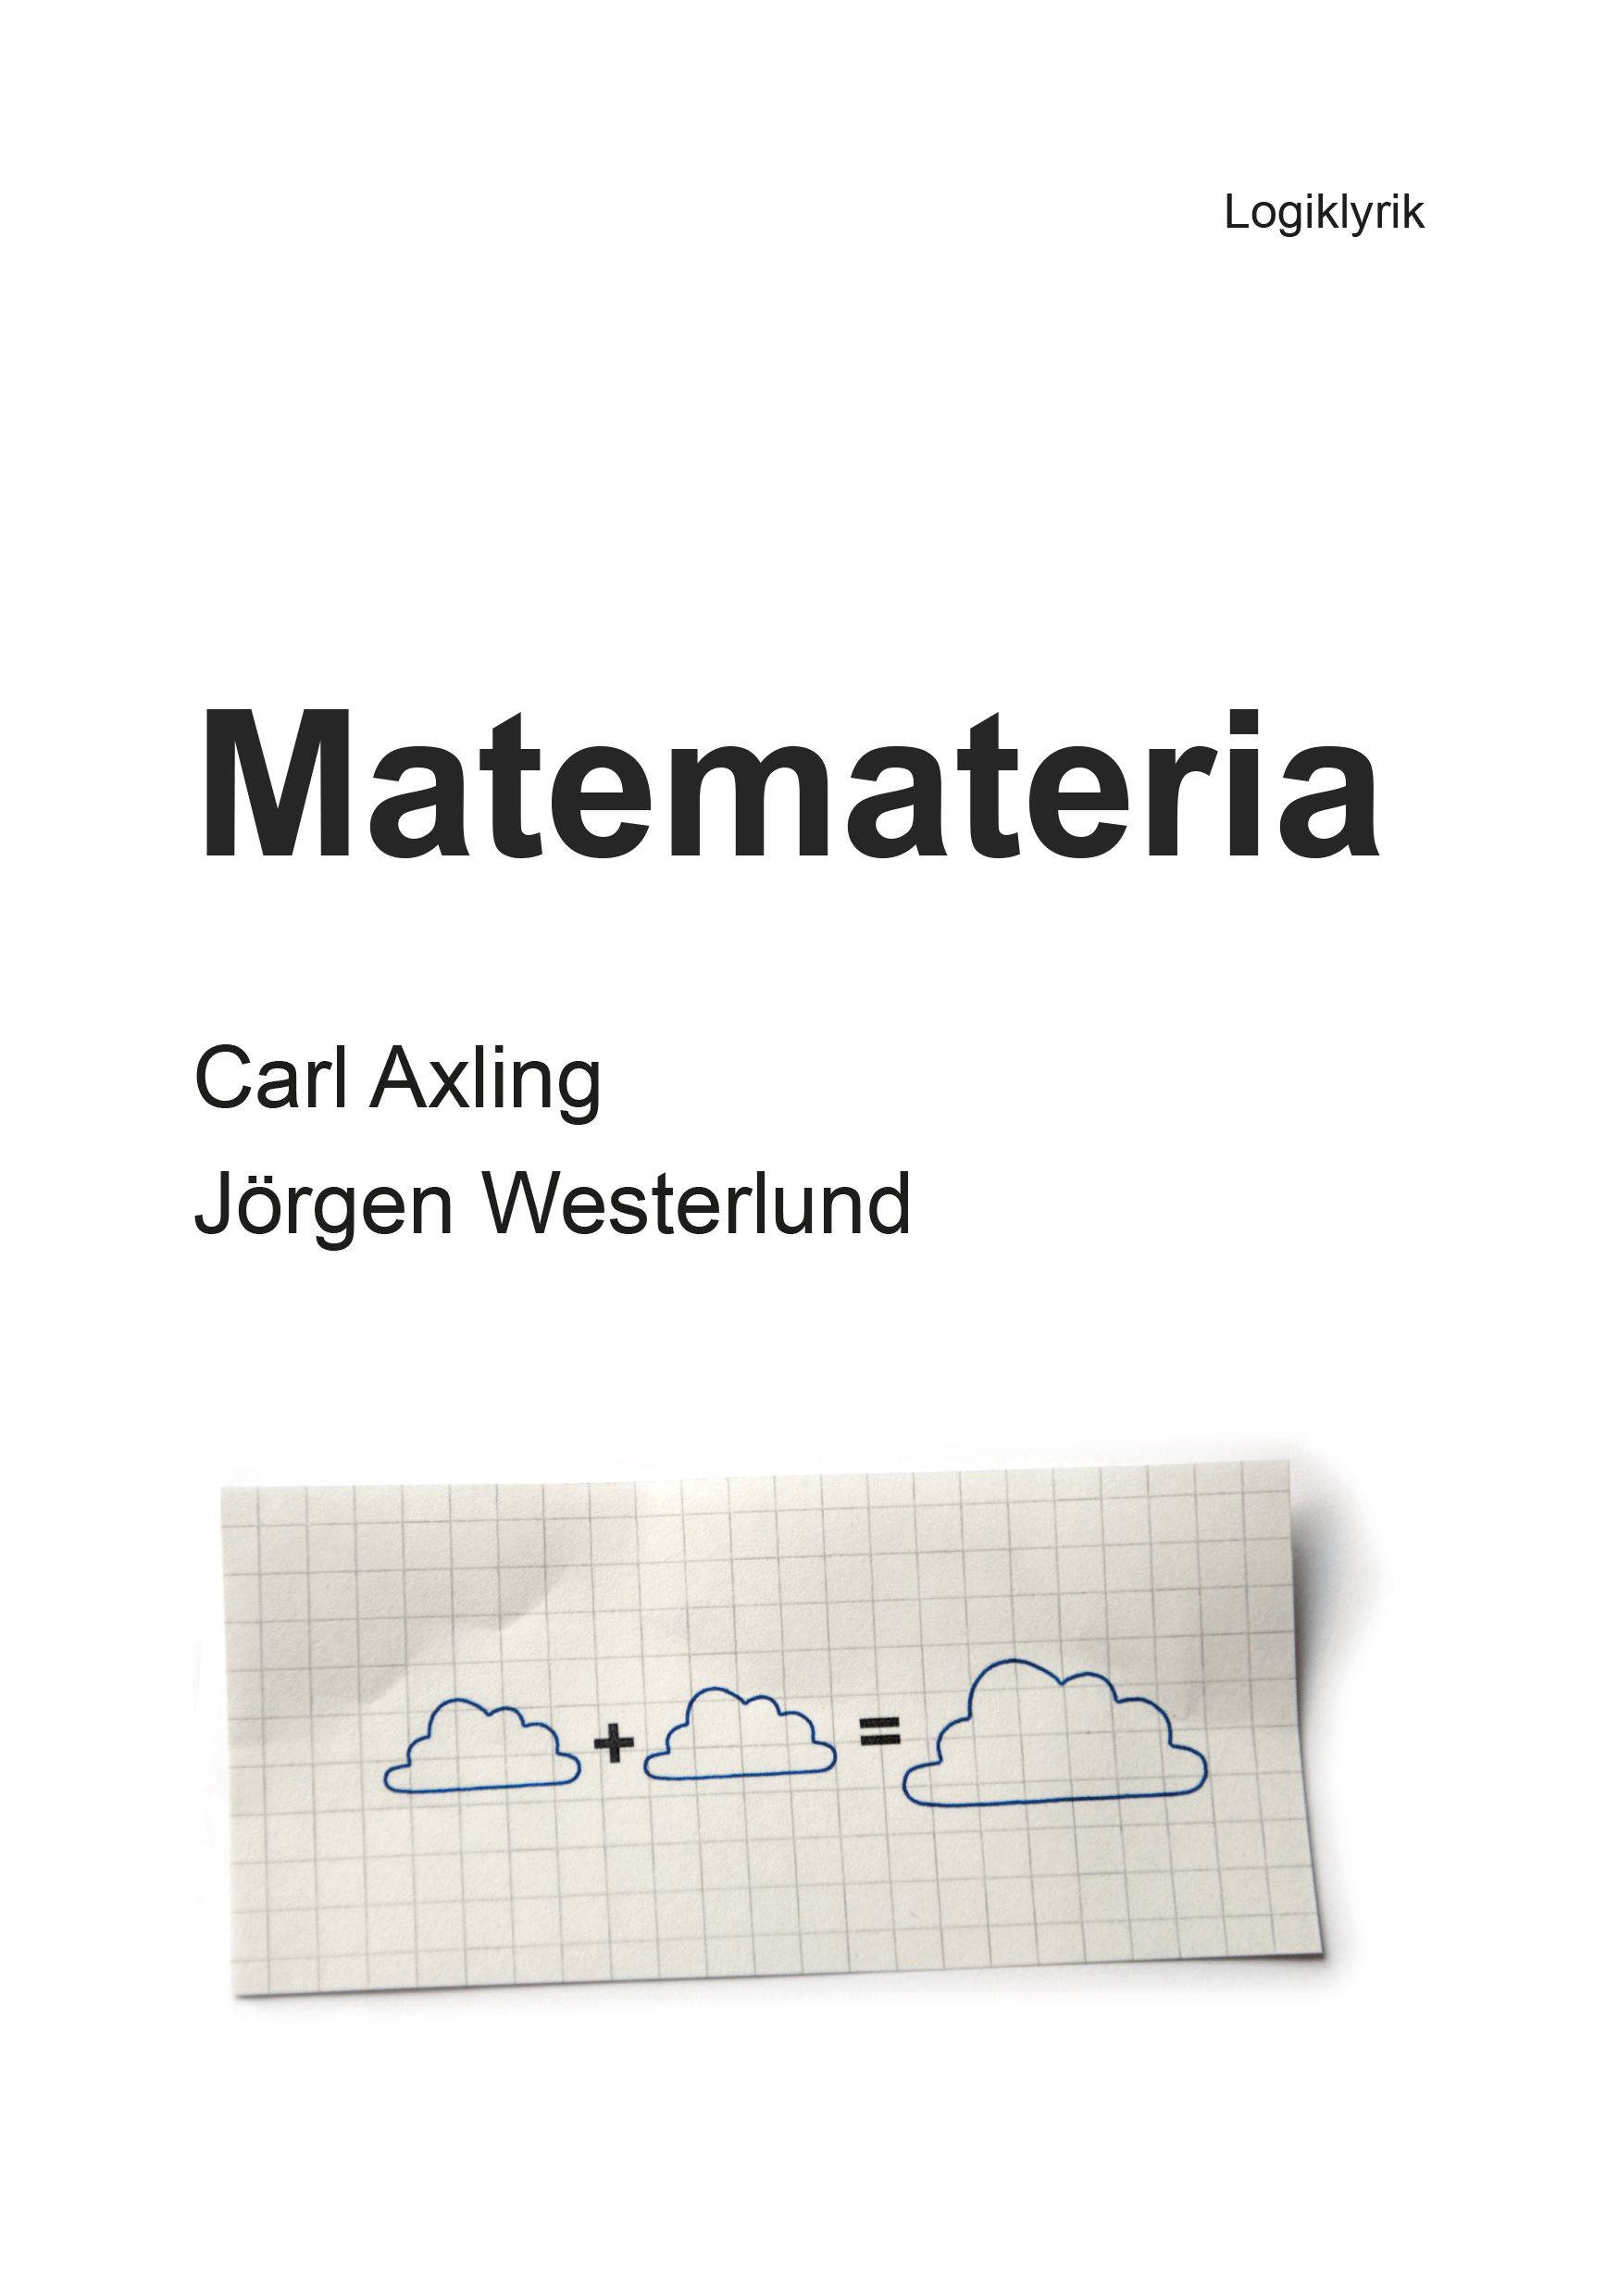 Matemateria, e-bok av Carl Axling, Jörgen Westerlund